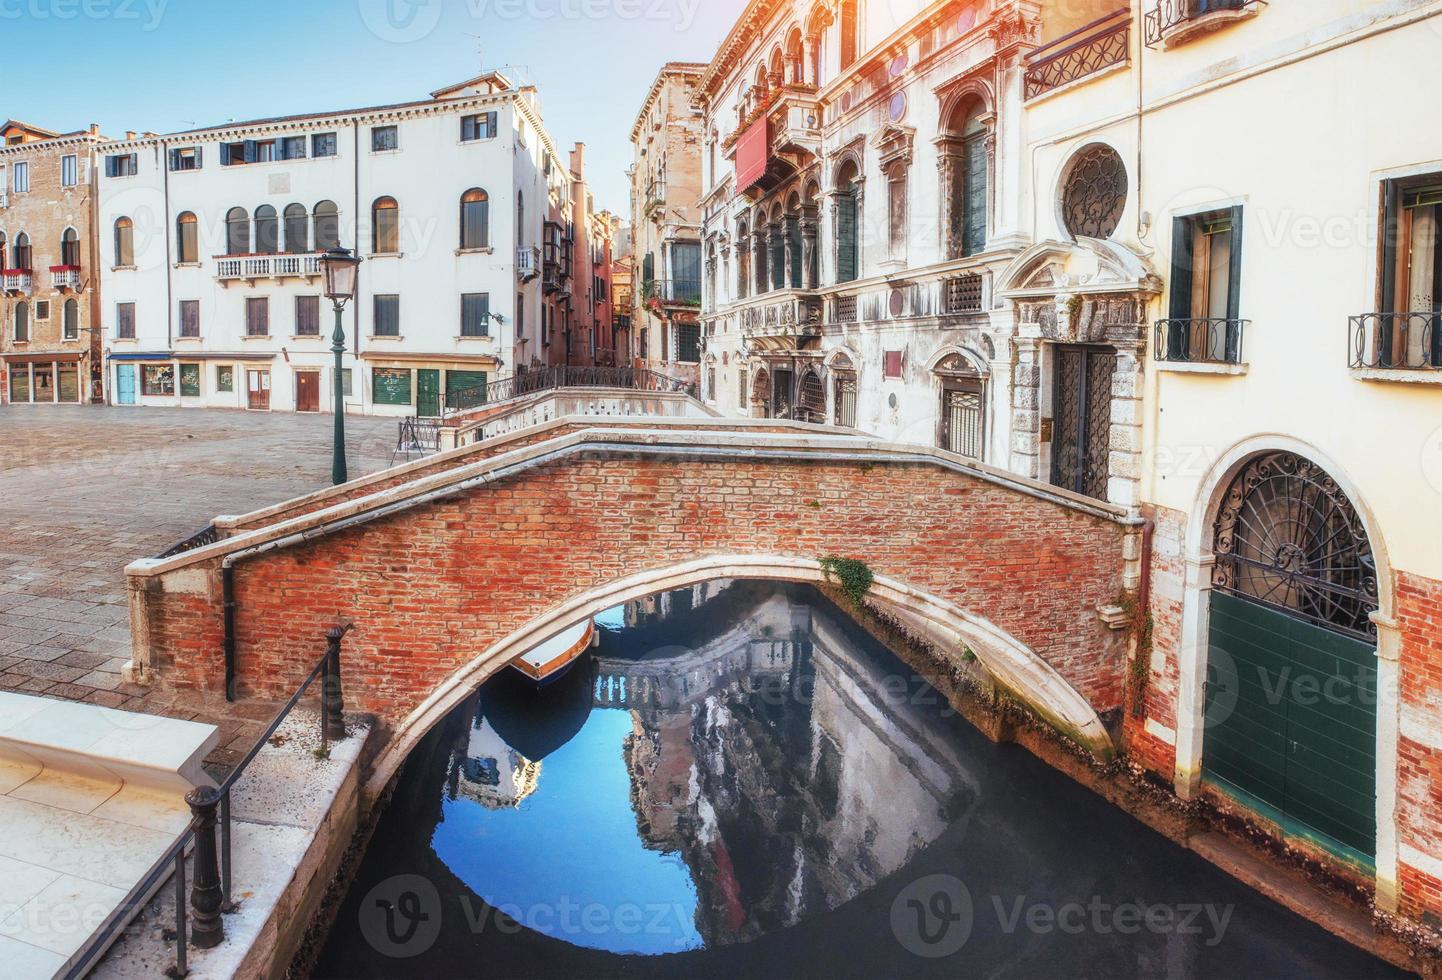 gondole tradizionali sul canale stretto tra case storiche colorate a venezia italia foto